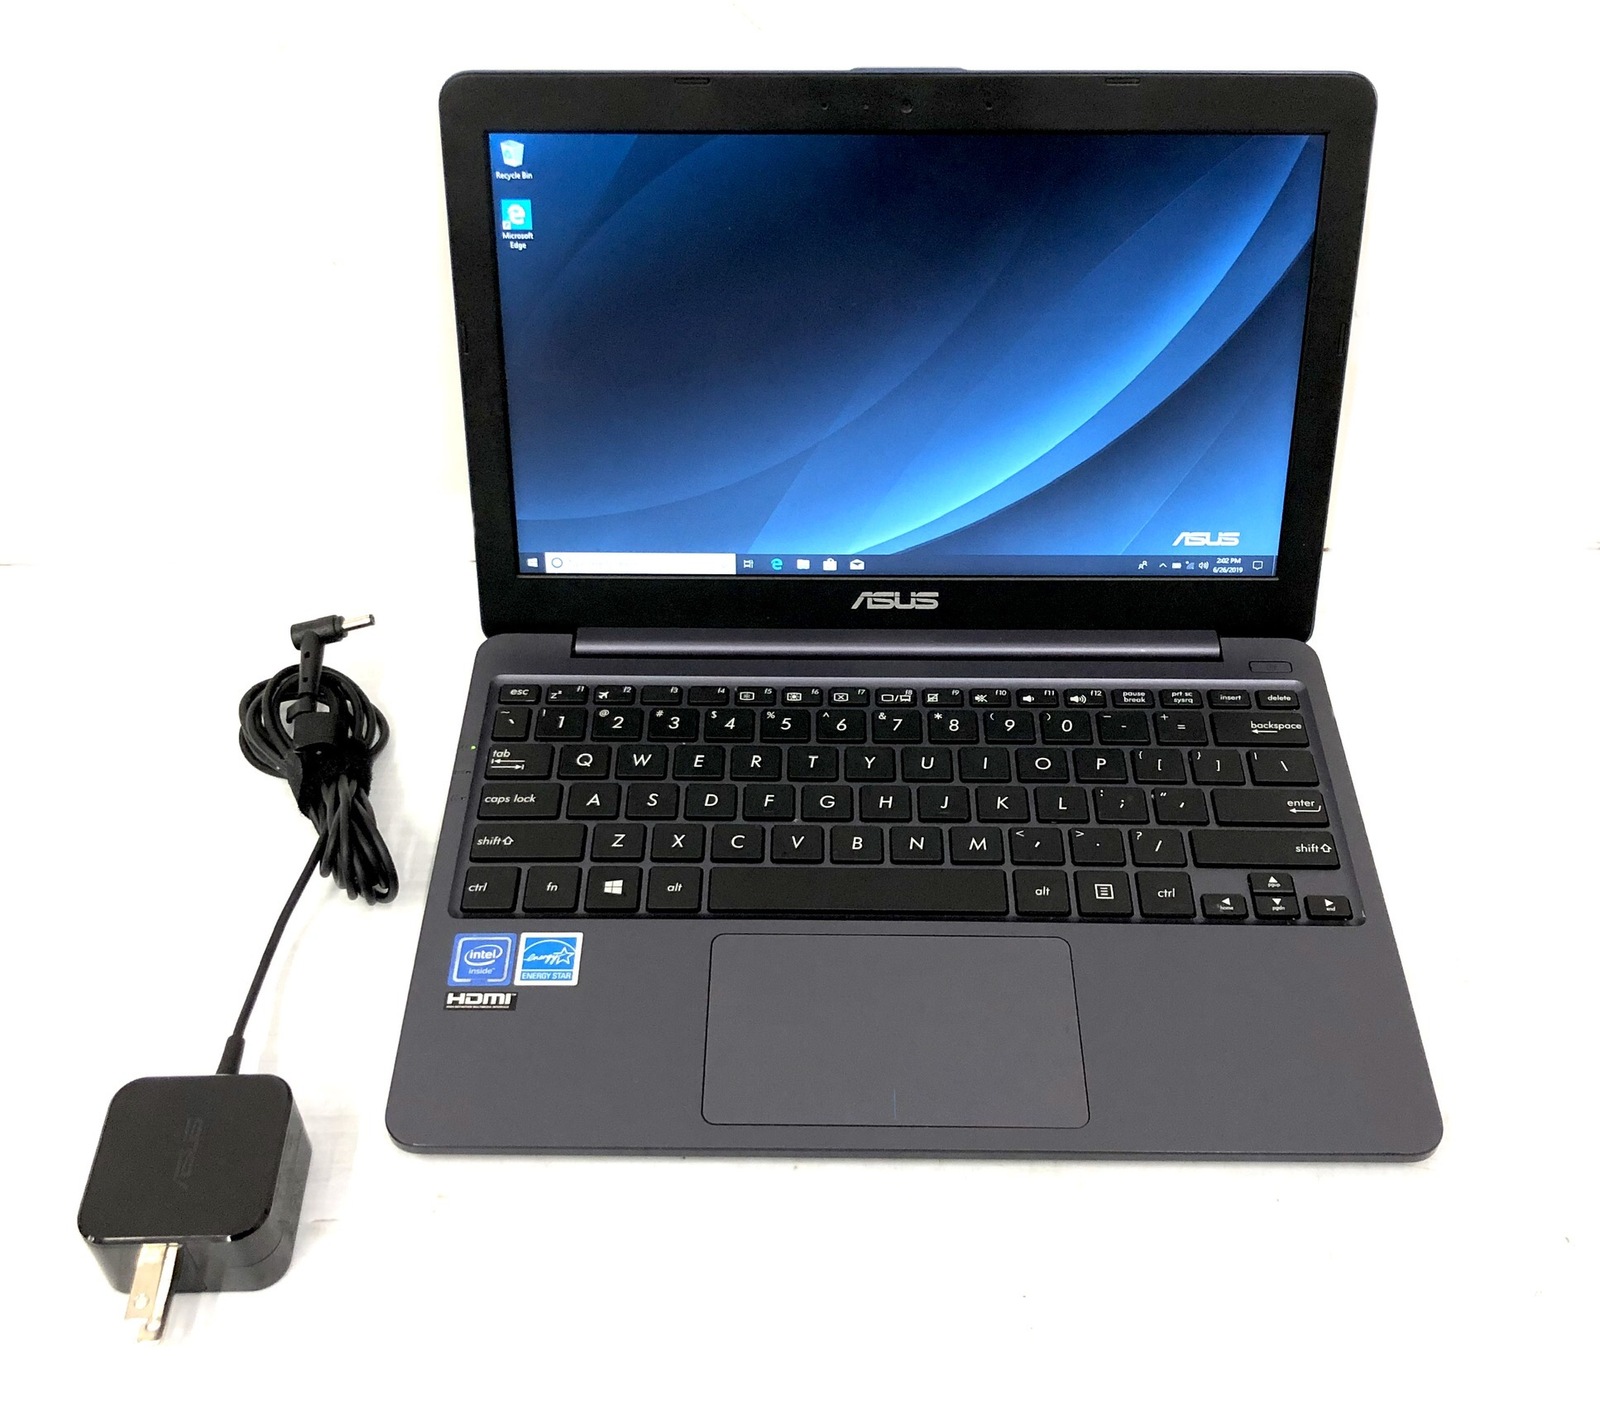 Asus Laptop E203m